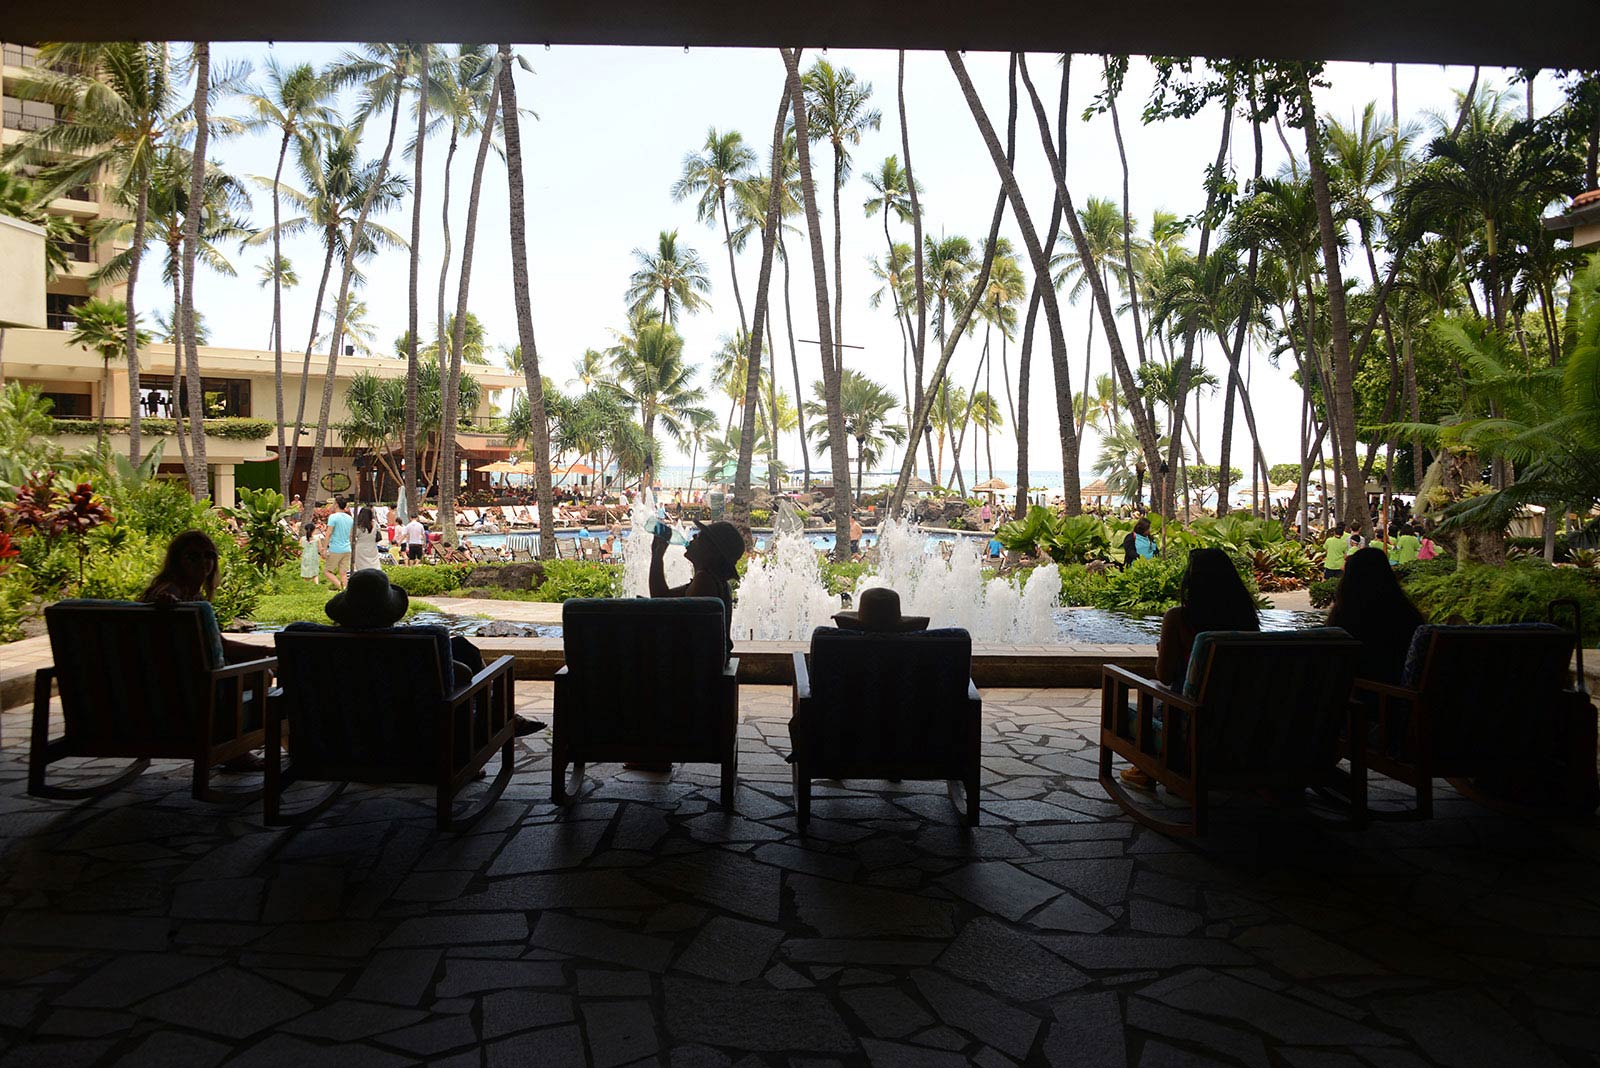 Parking at Hilton Hawaiian Village (Waikiki) – Hawaii timeshare resale